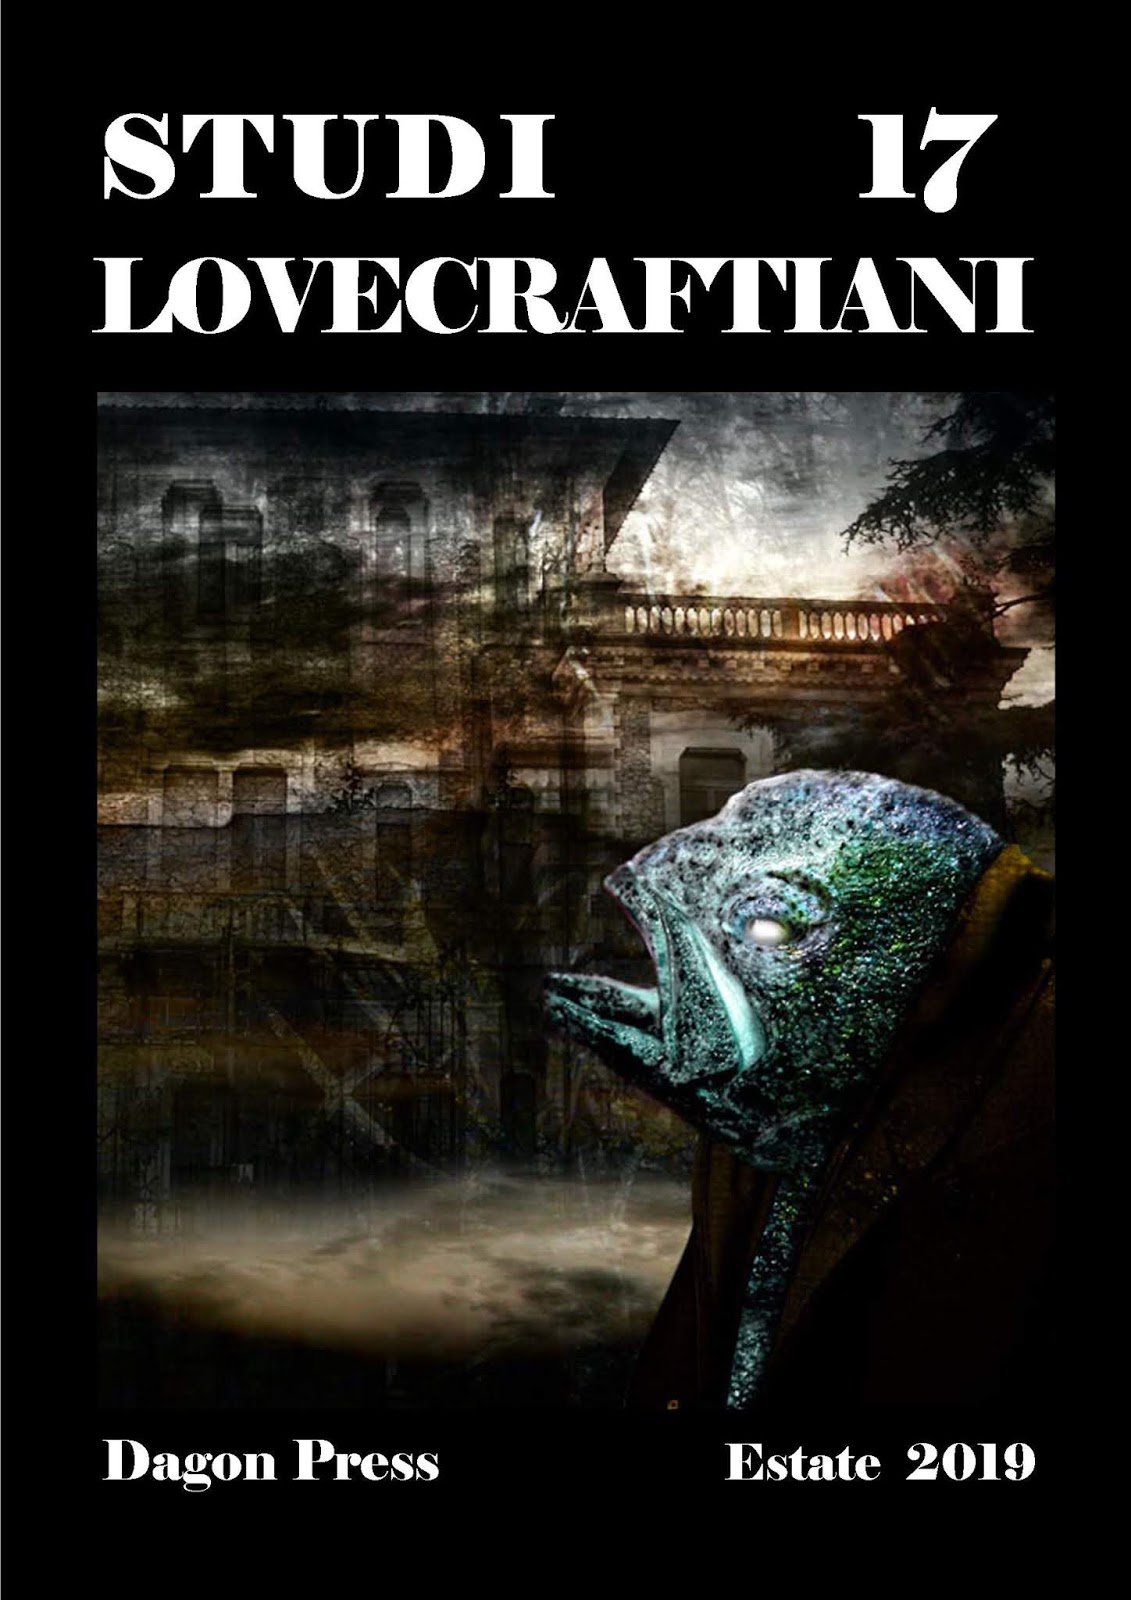 E' uscito Studi Lovecraftiani n° 17